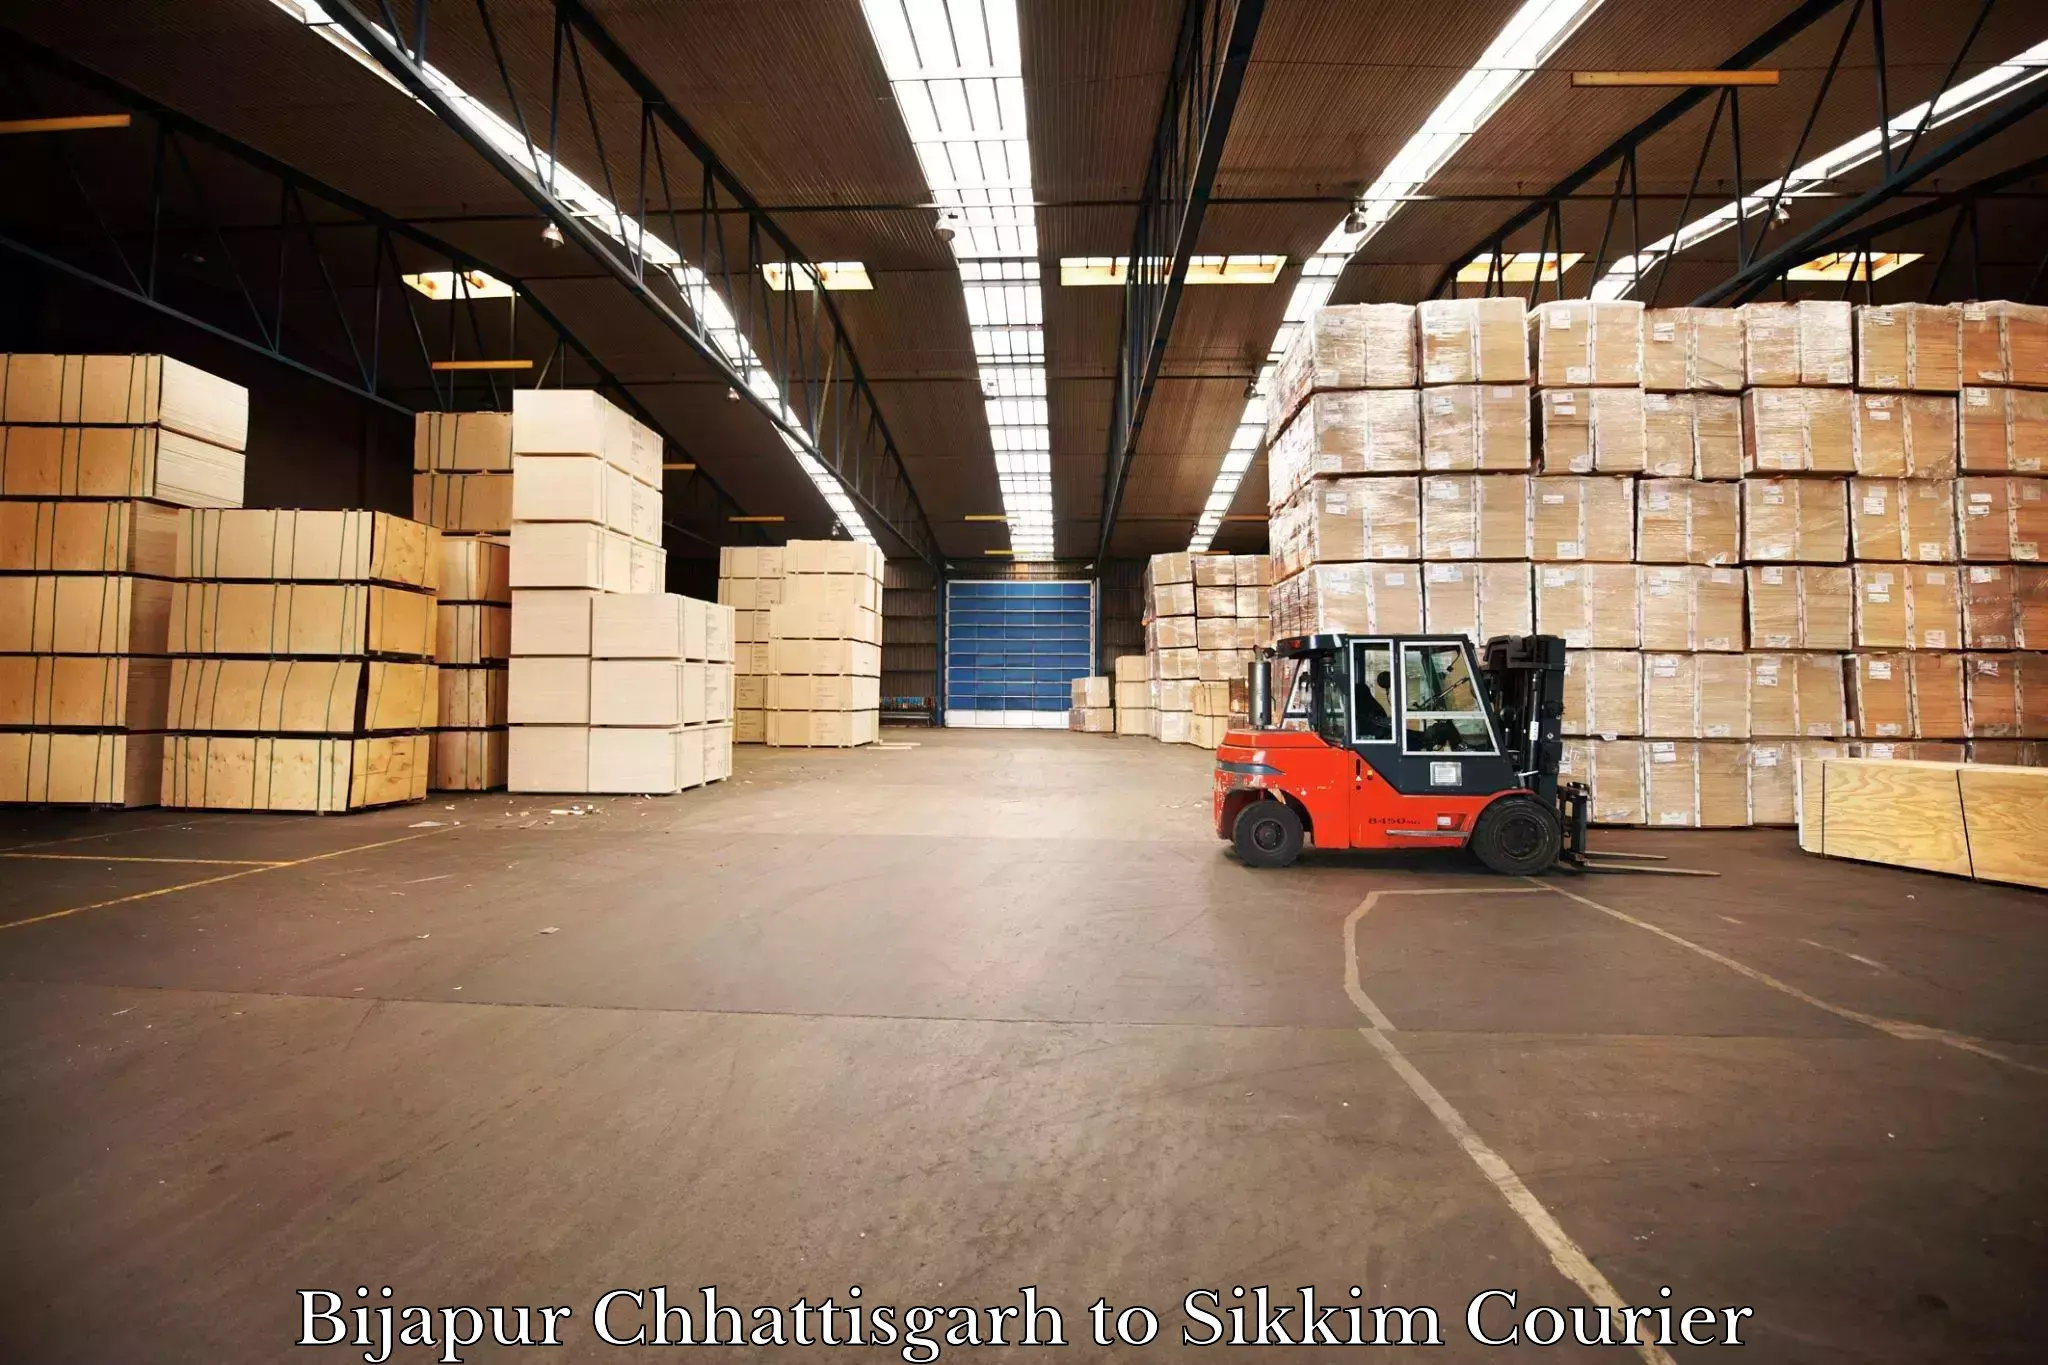 Cargo courier service Bijapur Chhattisgarh to Singtam